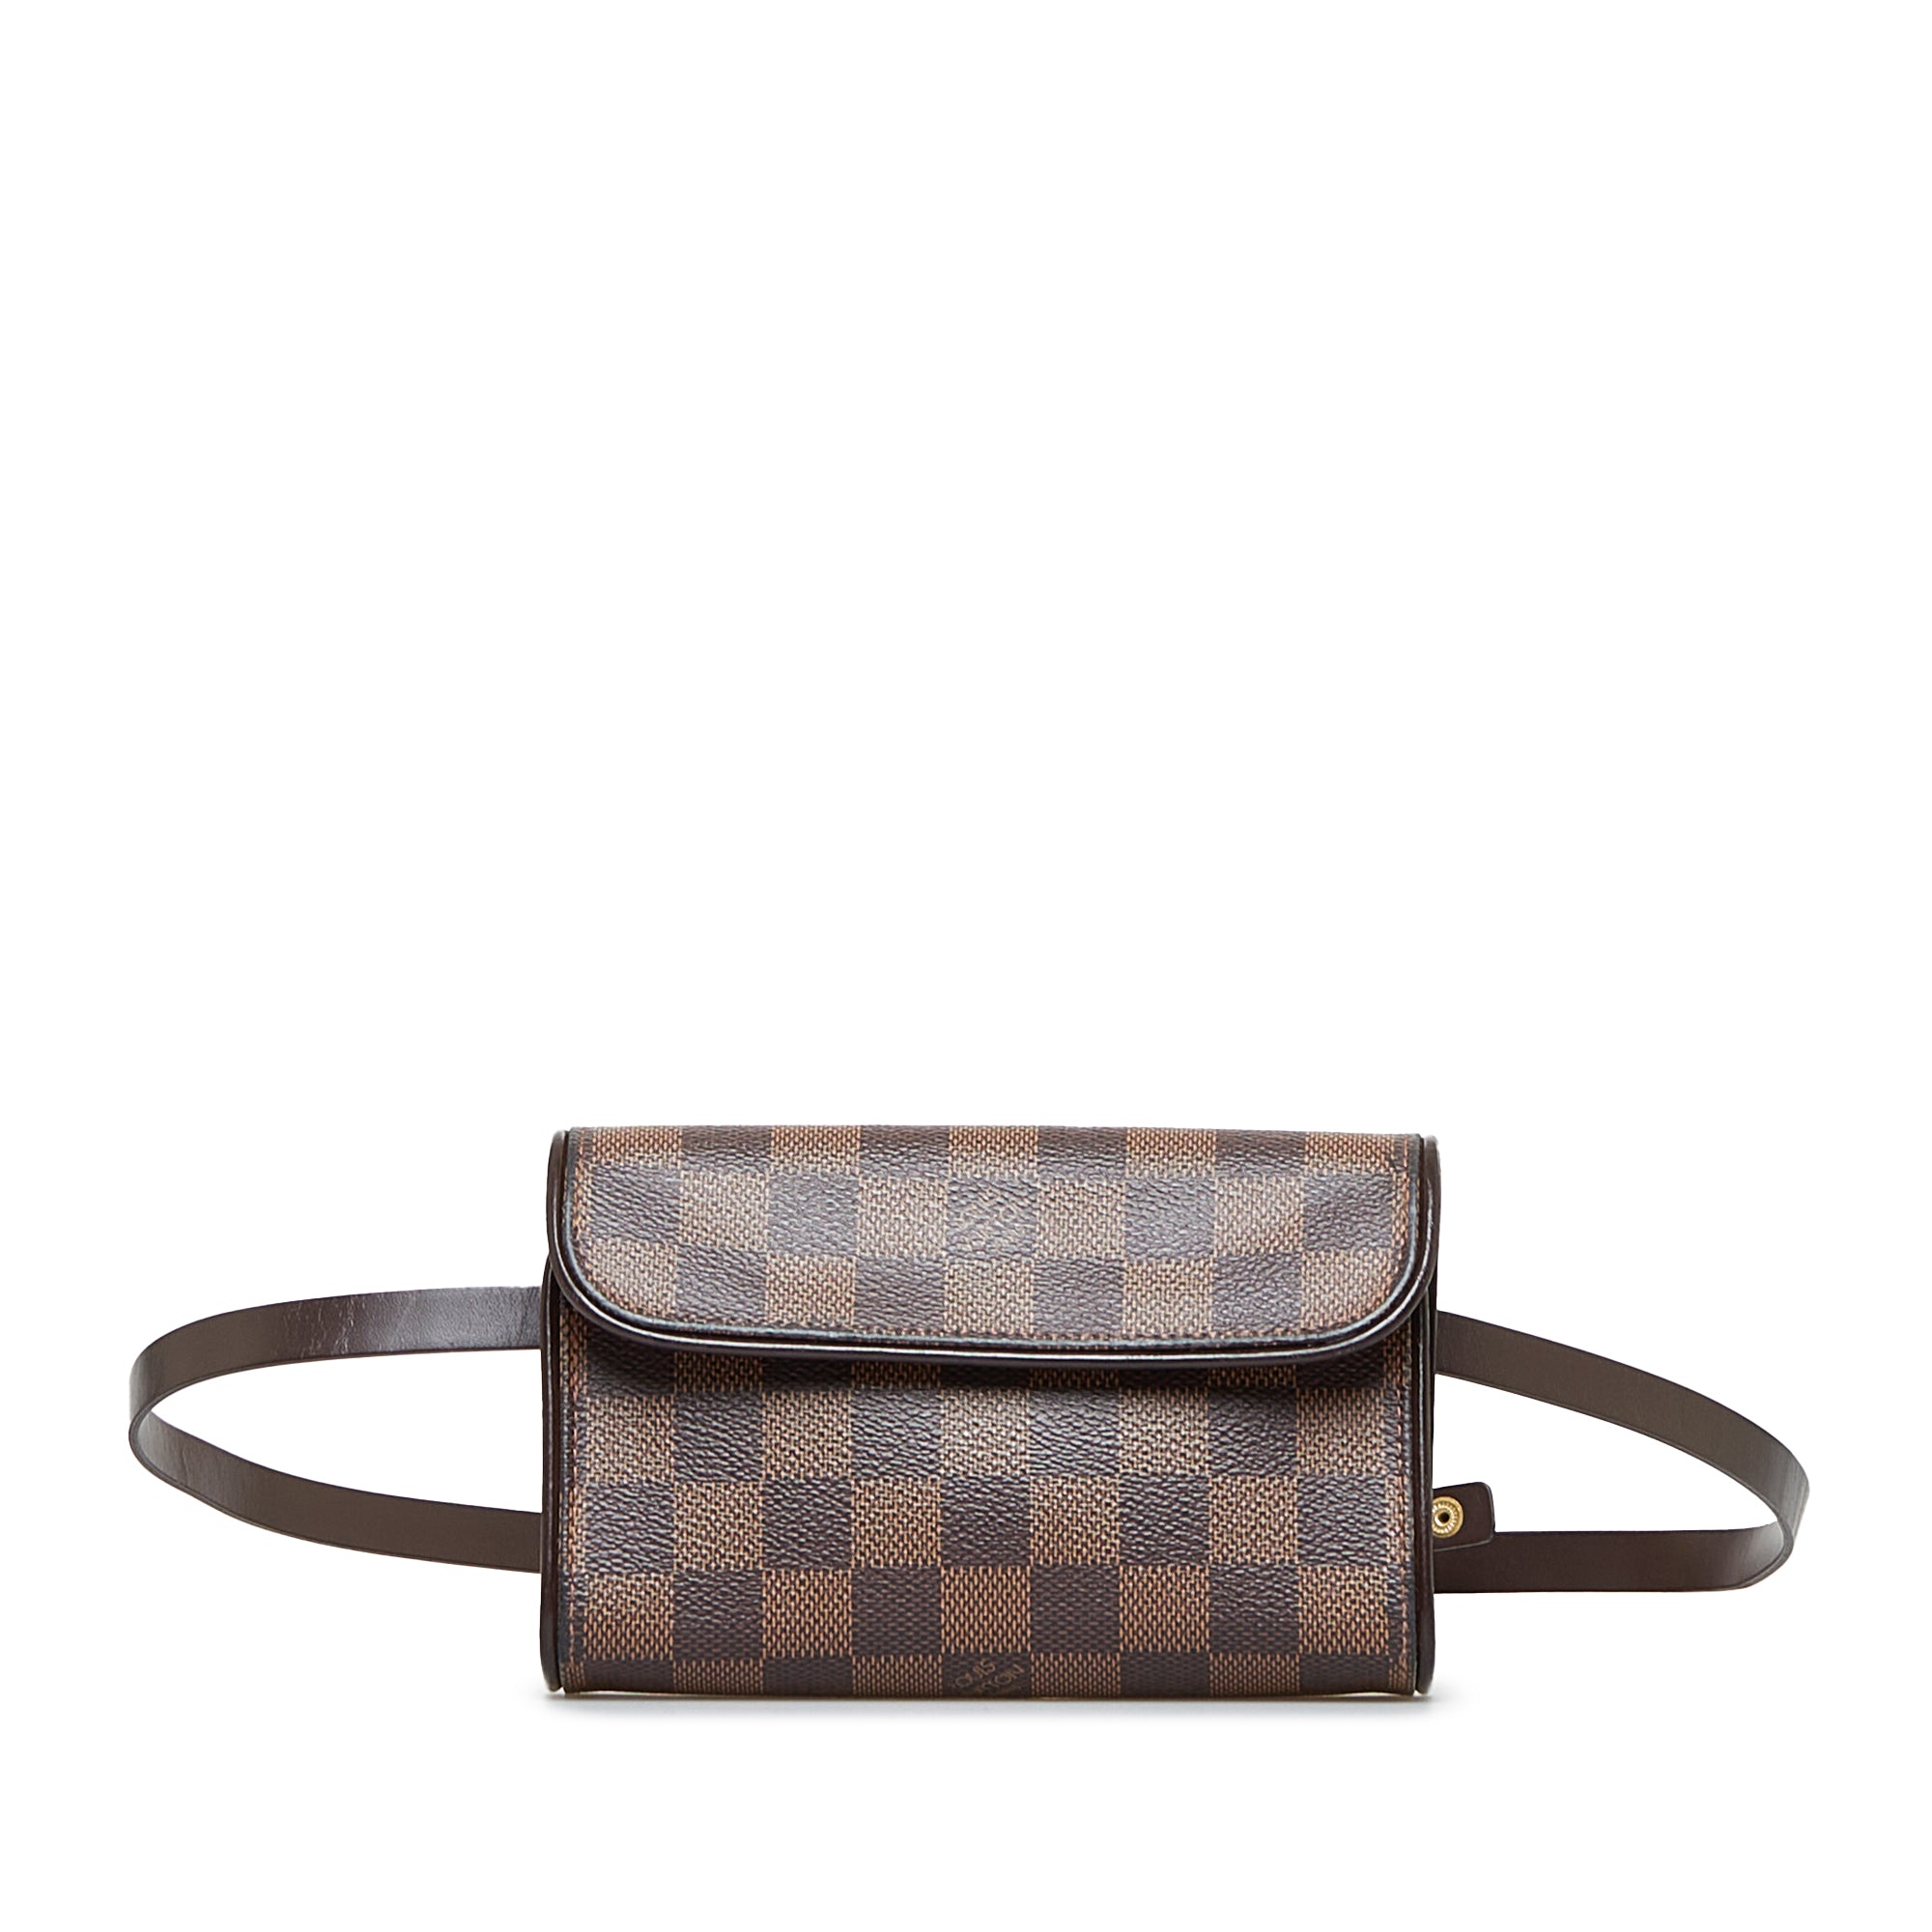 Authentic Louis Vuitton Geronimo Damier Ebene Canvas Belt Bag CA0025  eBay